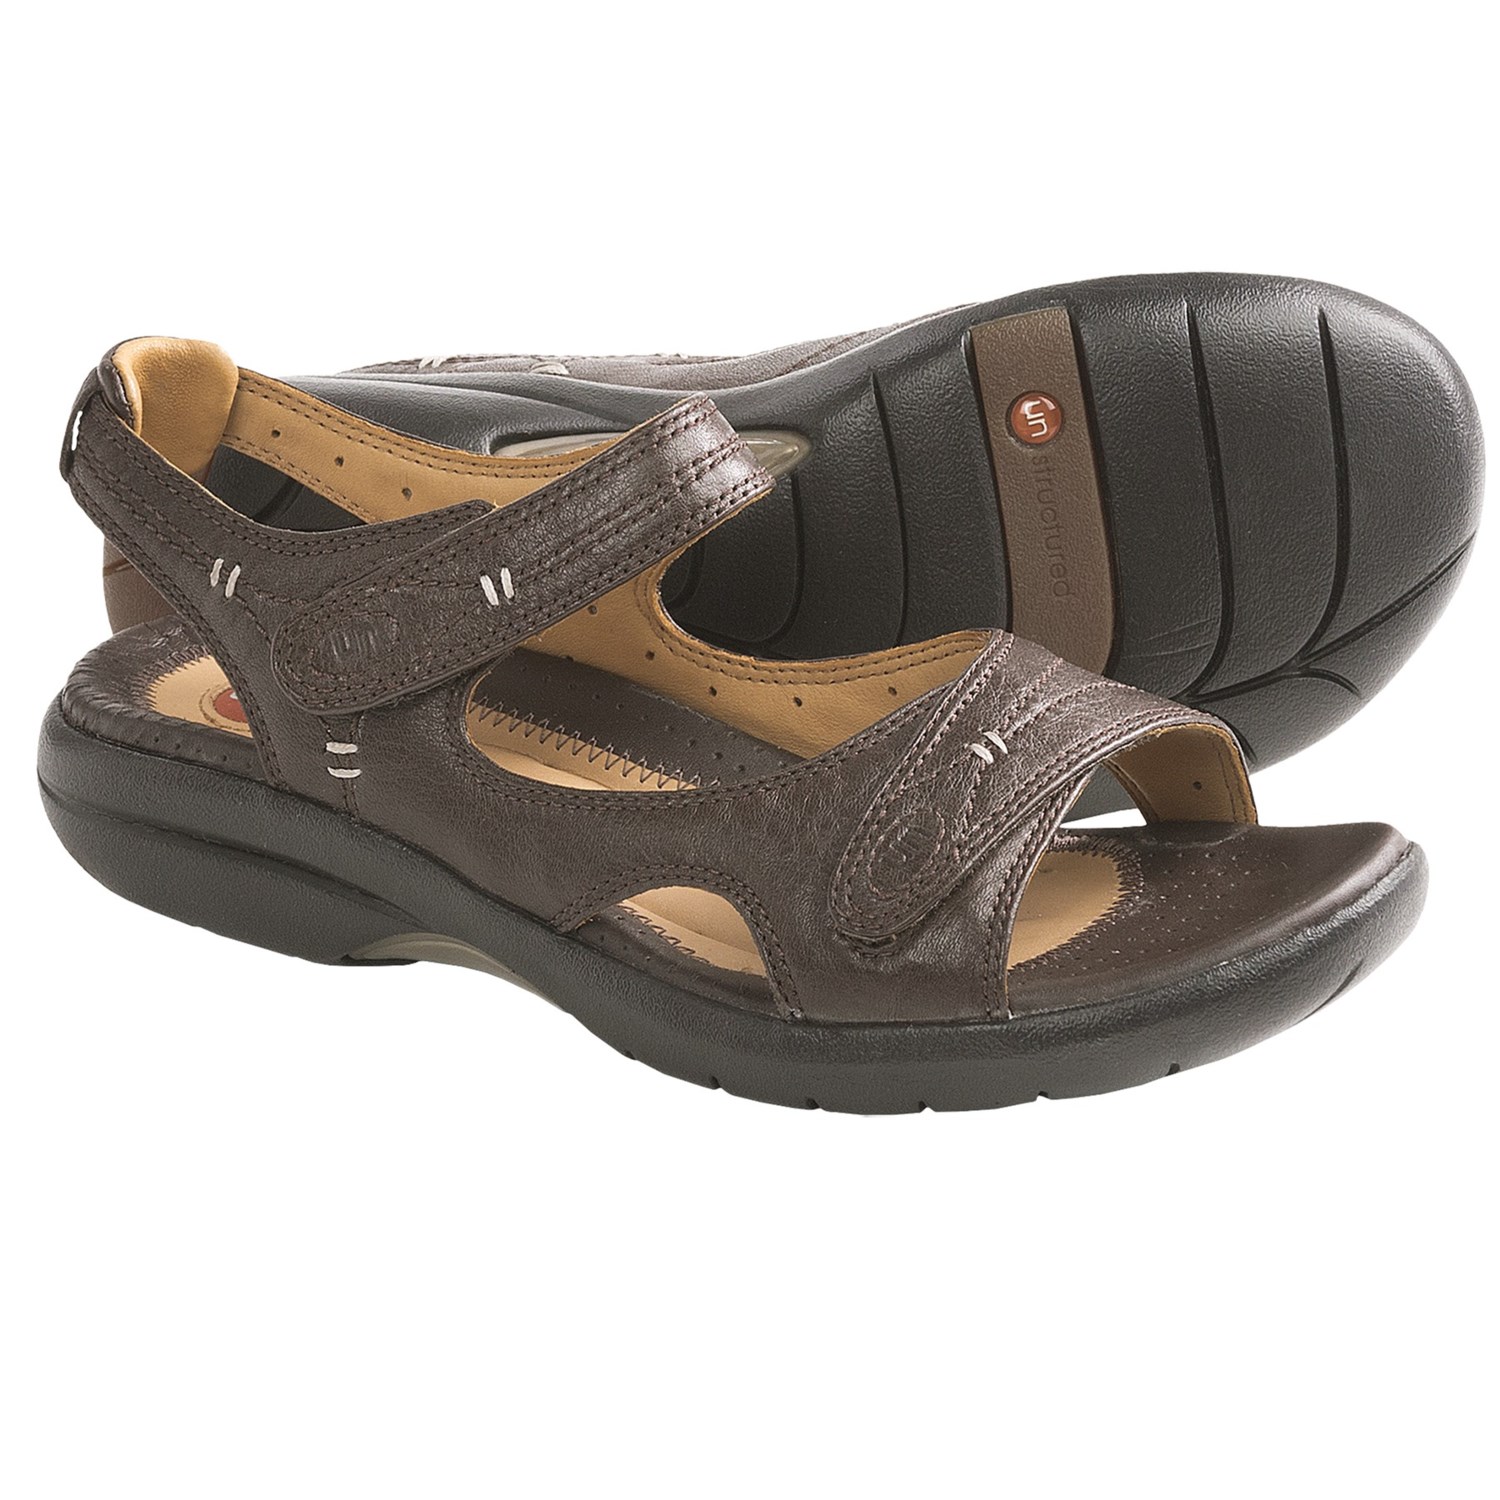 Aerosole Sandals: Clarks Hatch Sandals